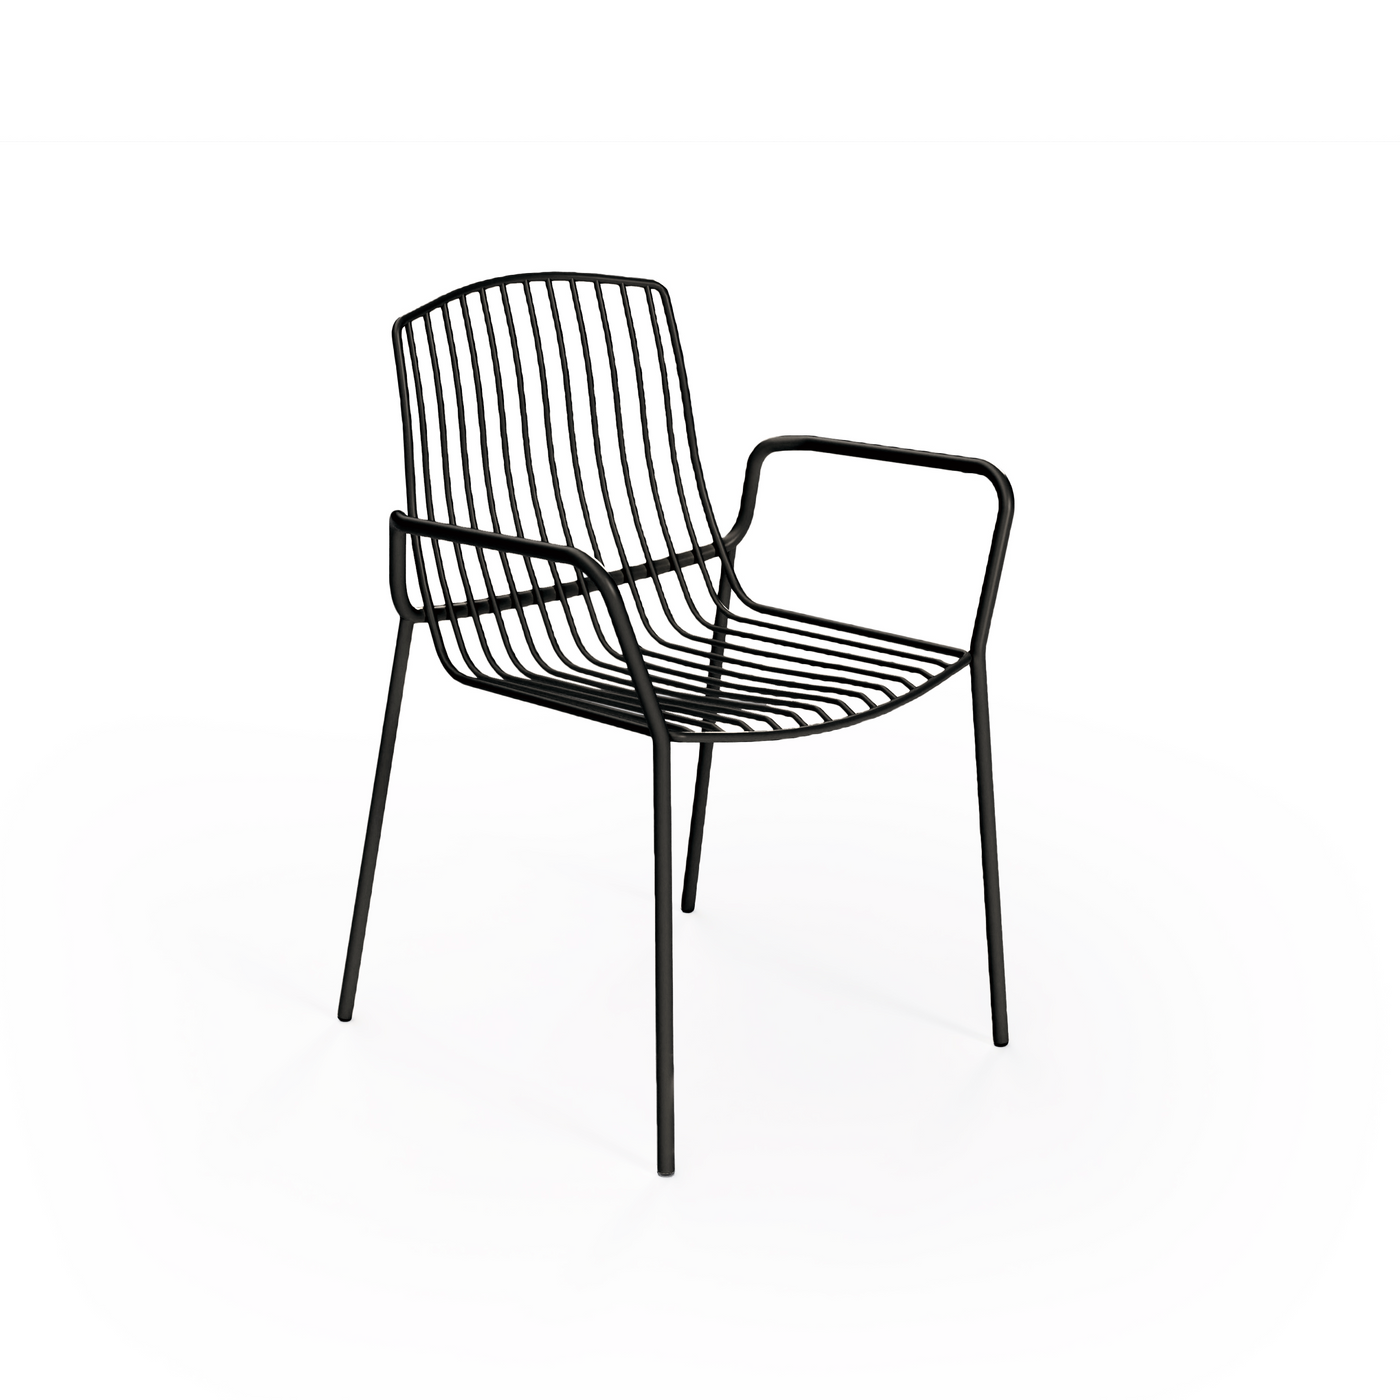 Frame Stackable Metal Garden Chair w/Armrests, Black (Set of 2)